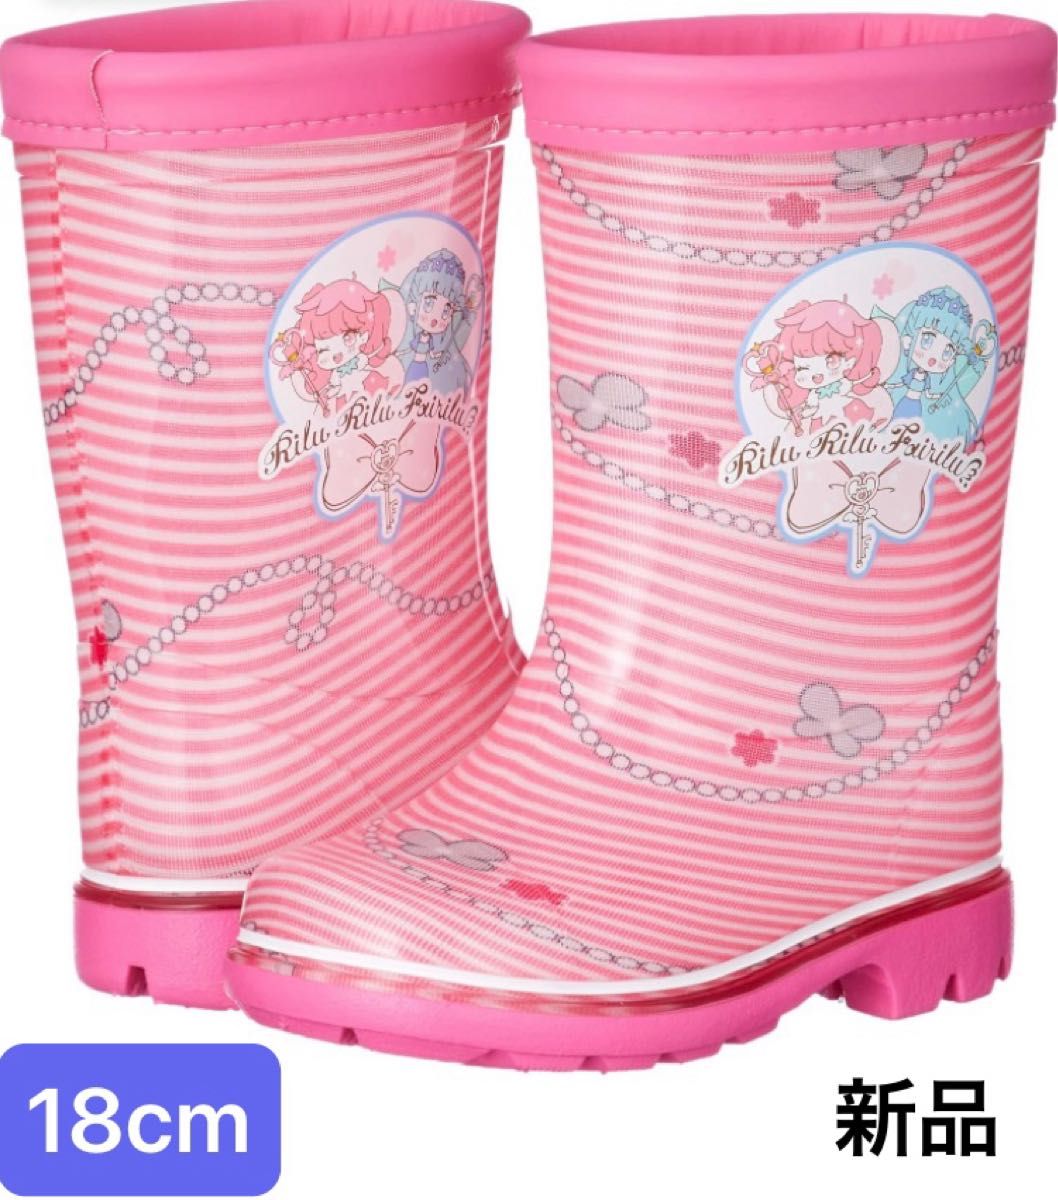 新品2E 18cm サンリオ リルリルフェアリル レインブーツ 長靴 ピンク 女の子 moonstar ムーンスター 日本製キッズ